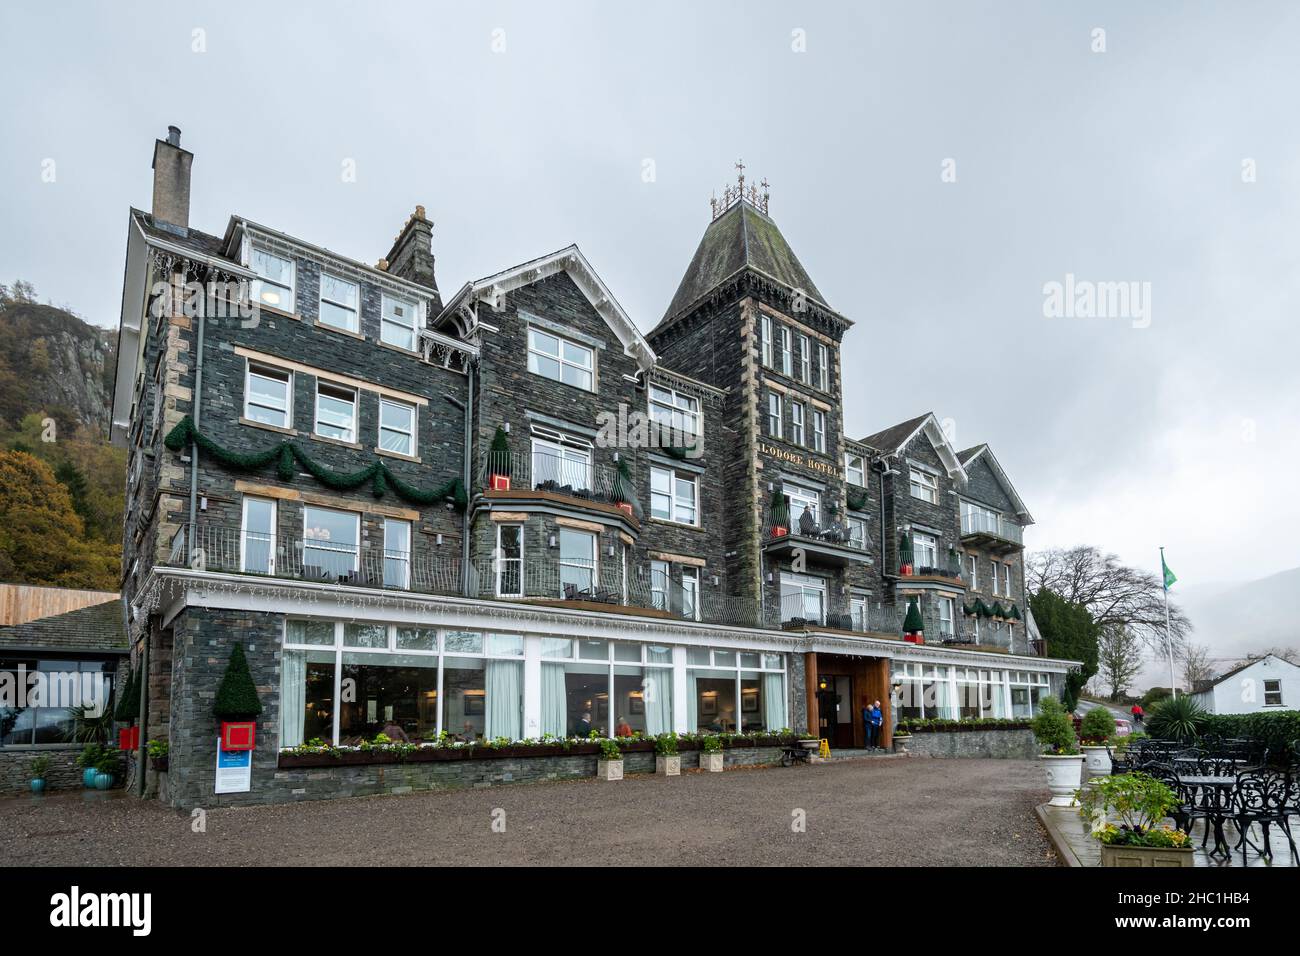 Lodore Falls Hotel and Spa, hébergement de luxe avec vue sur Derwentwater dans le parc national de Lake District, Cumbria, Angleterre, Royaume-Uni Banque D'Images